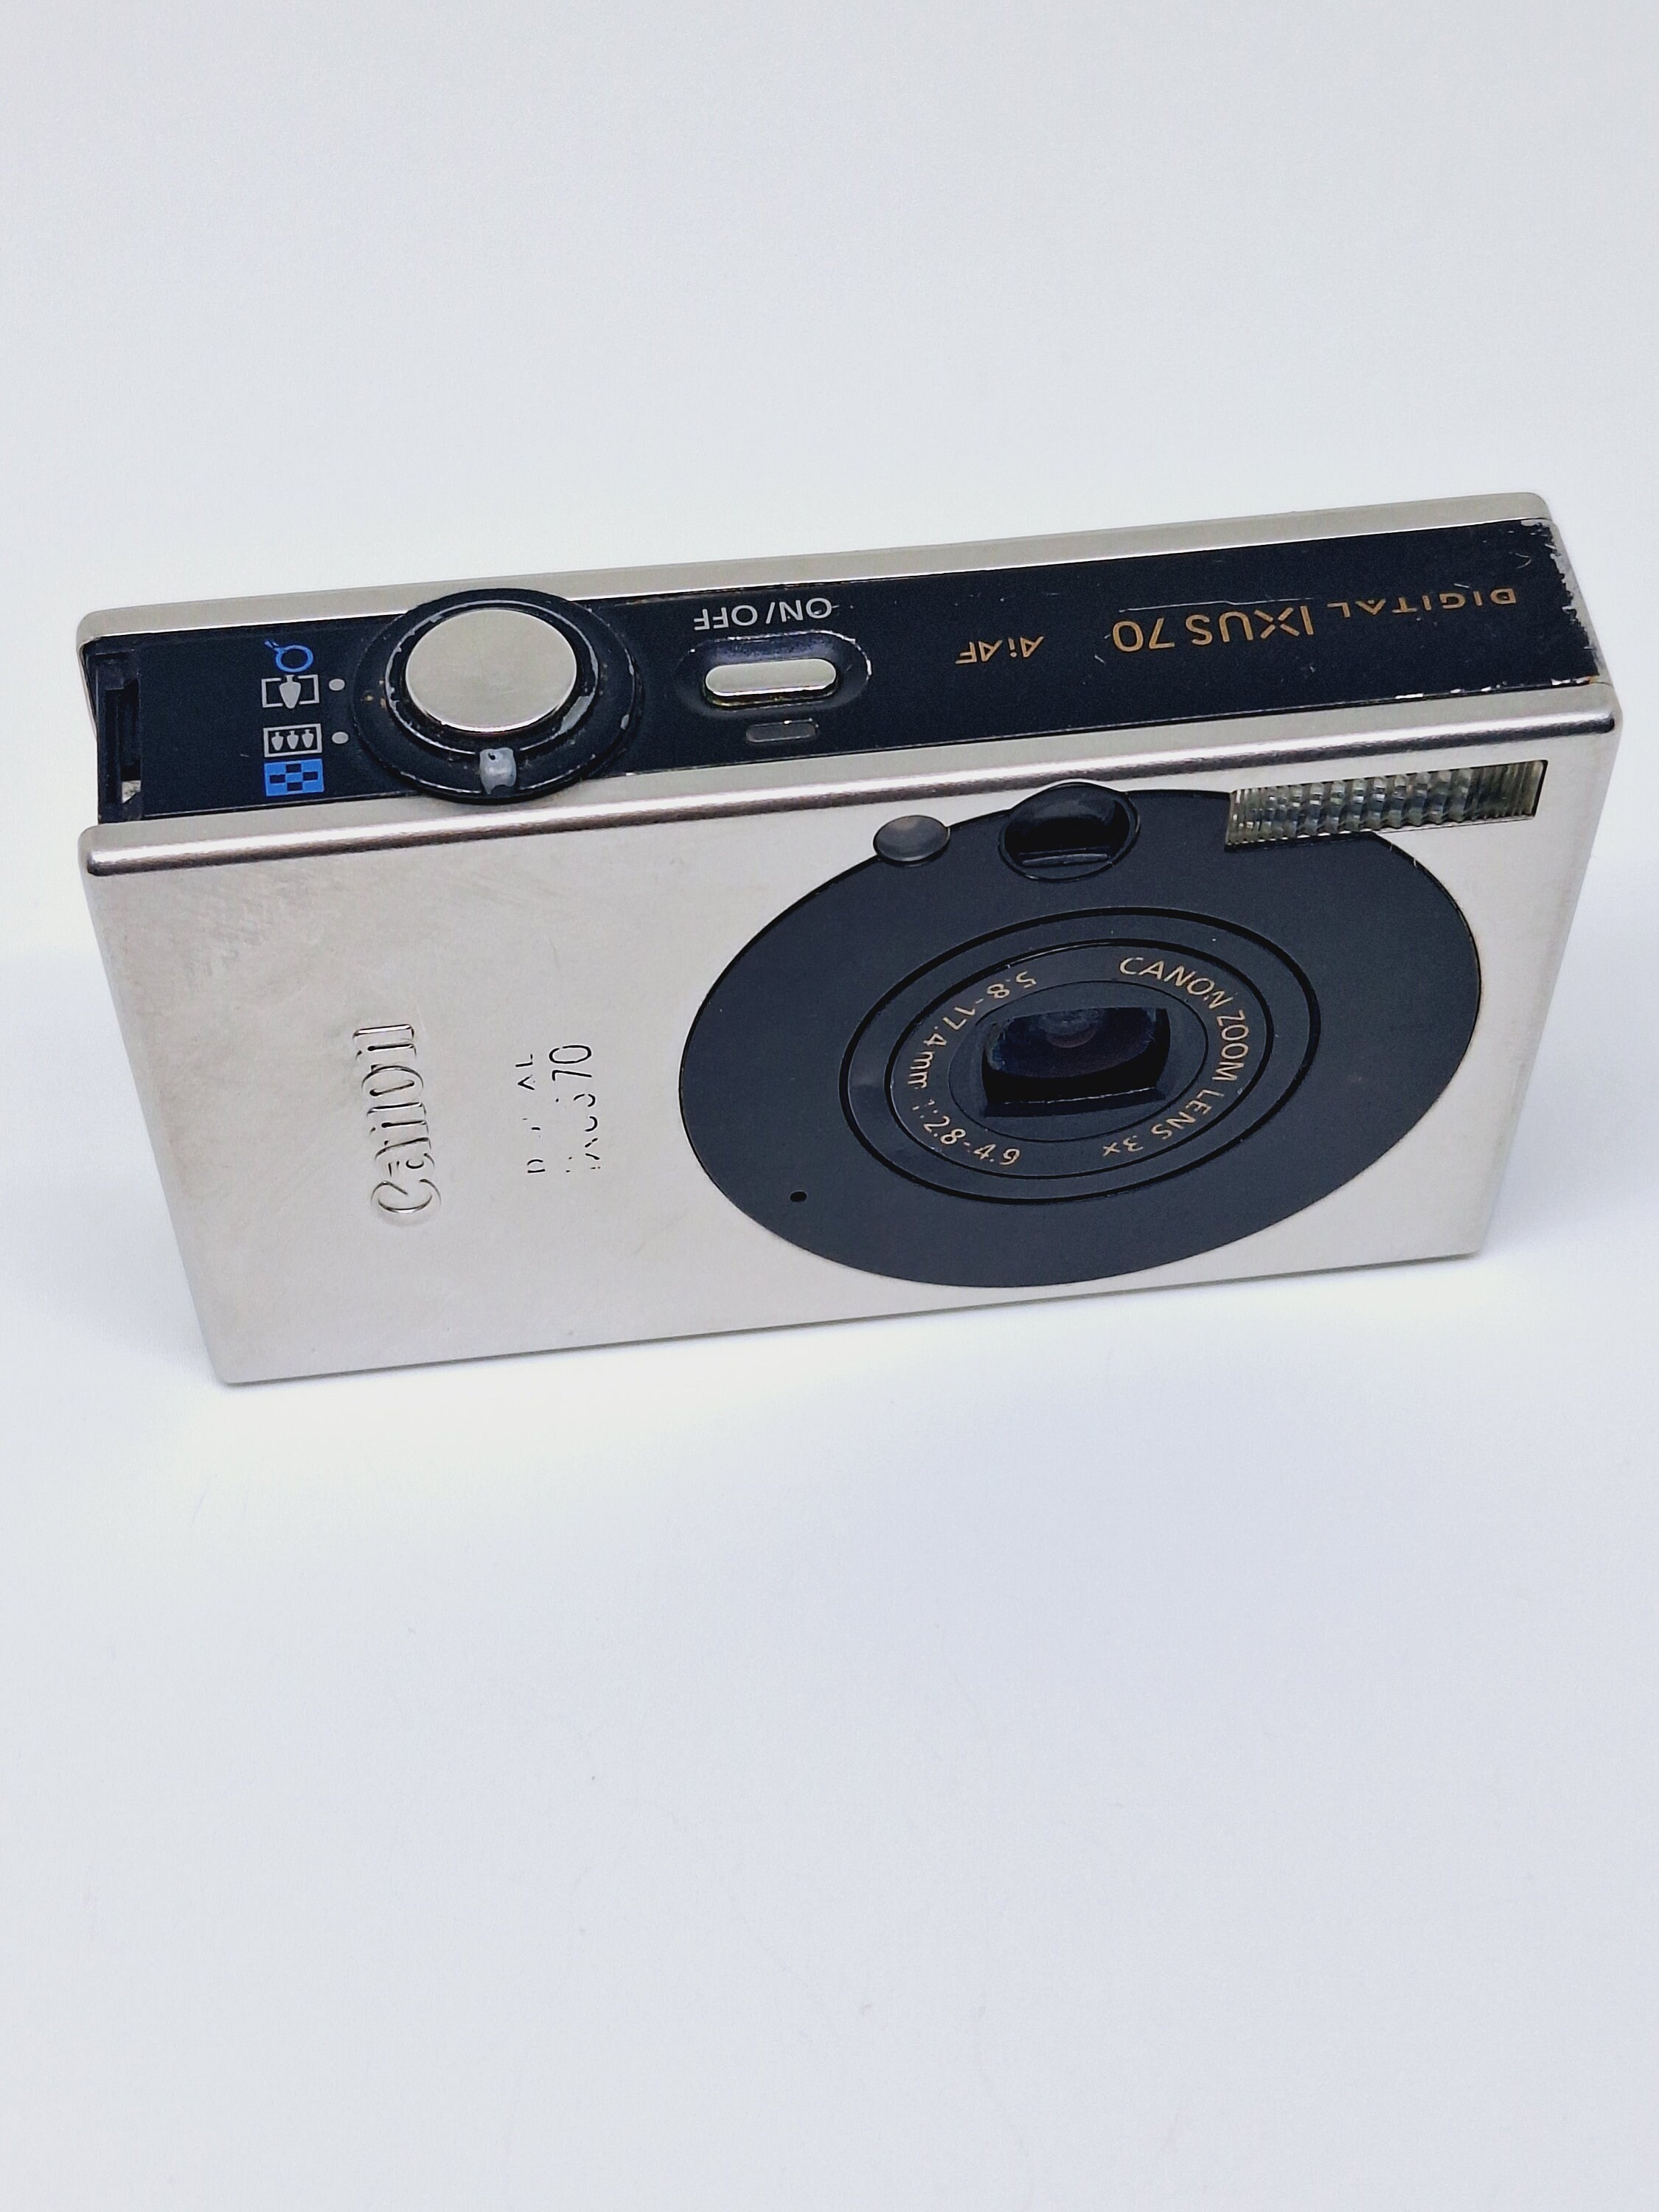 Canon PowerShot SD750 7.1MP Cámara digital Elph con zoom óptico 3x (plata)  (Modelo antiguo)